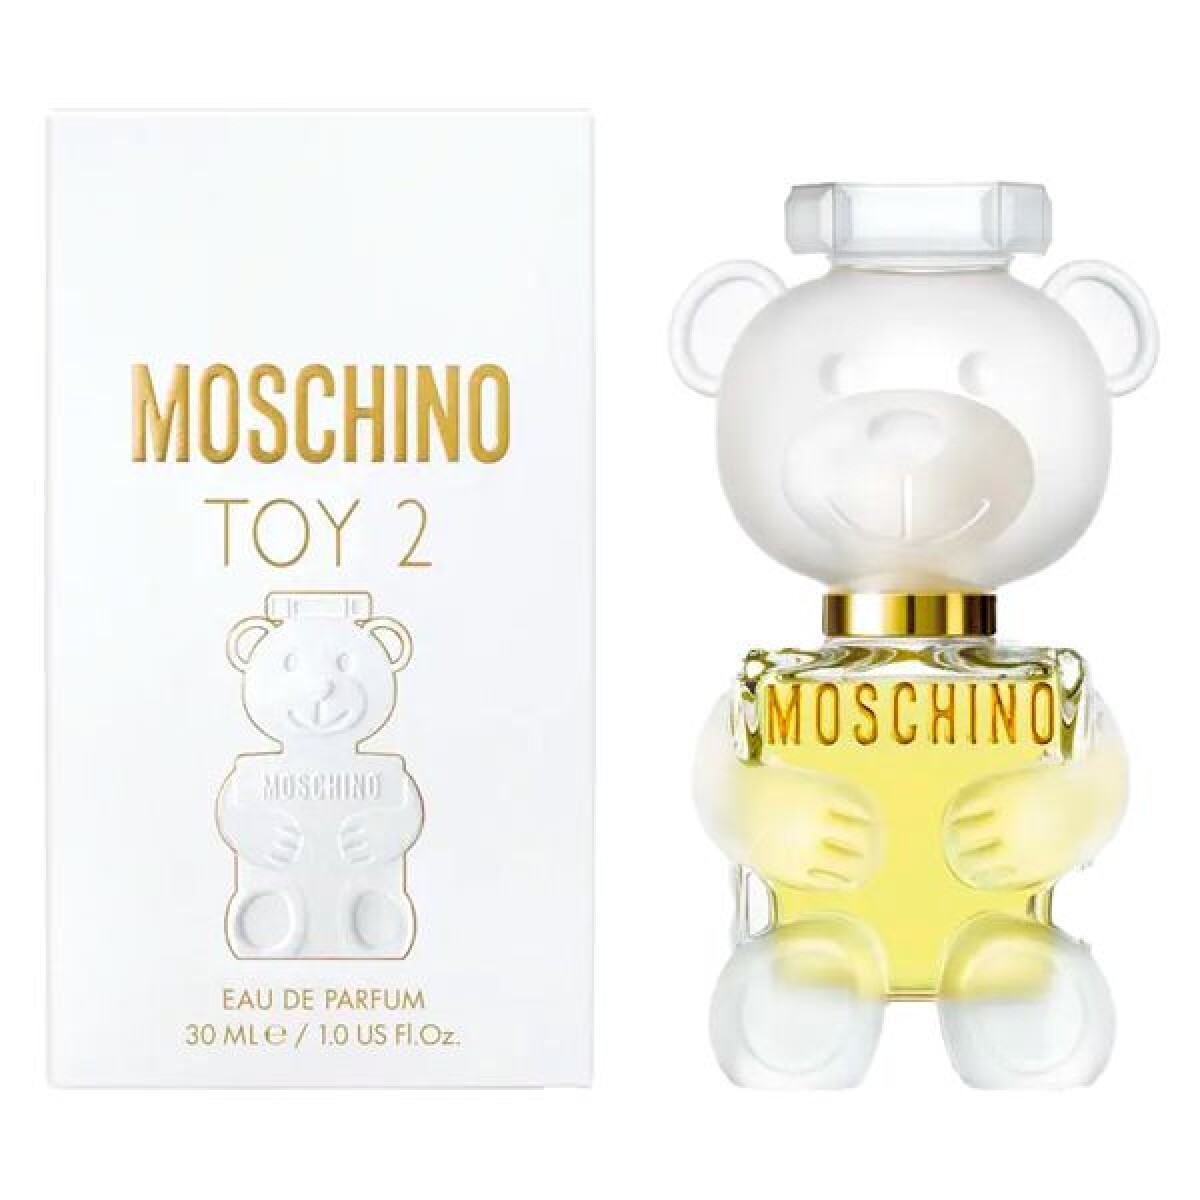 Moschino Toy 2 edp - 30 ml 